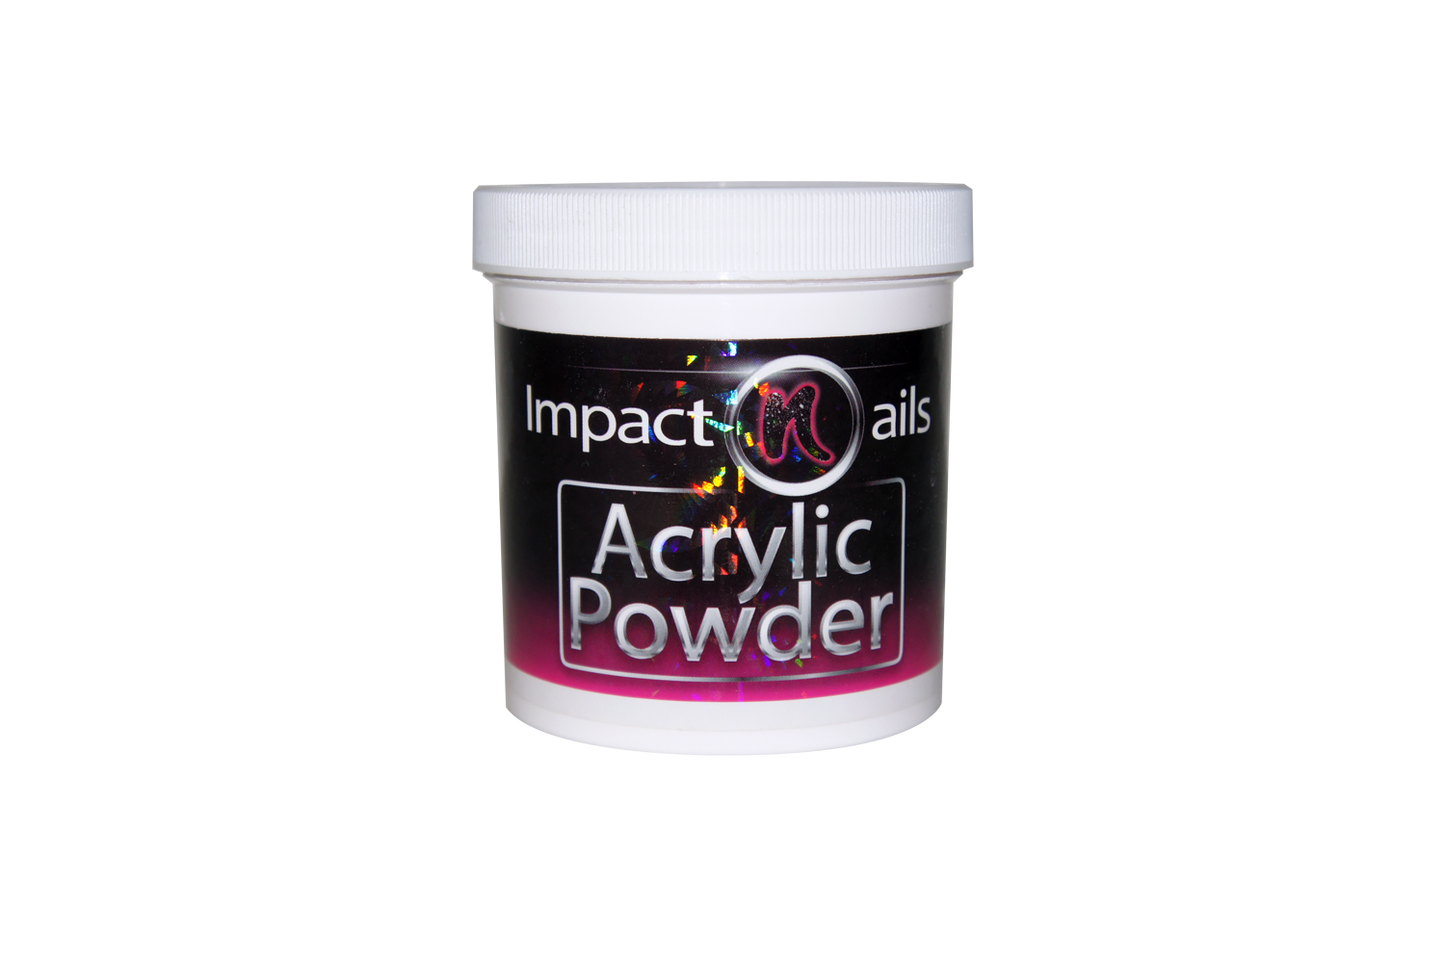 Crystal Powder